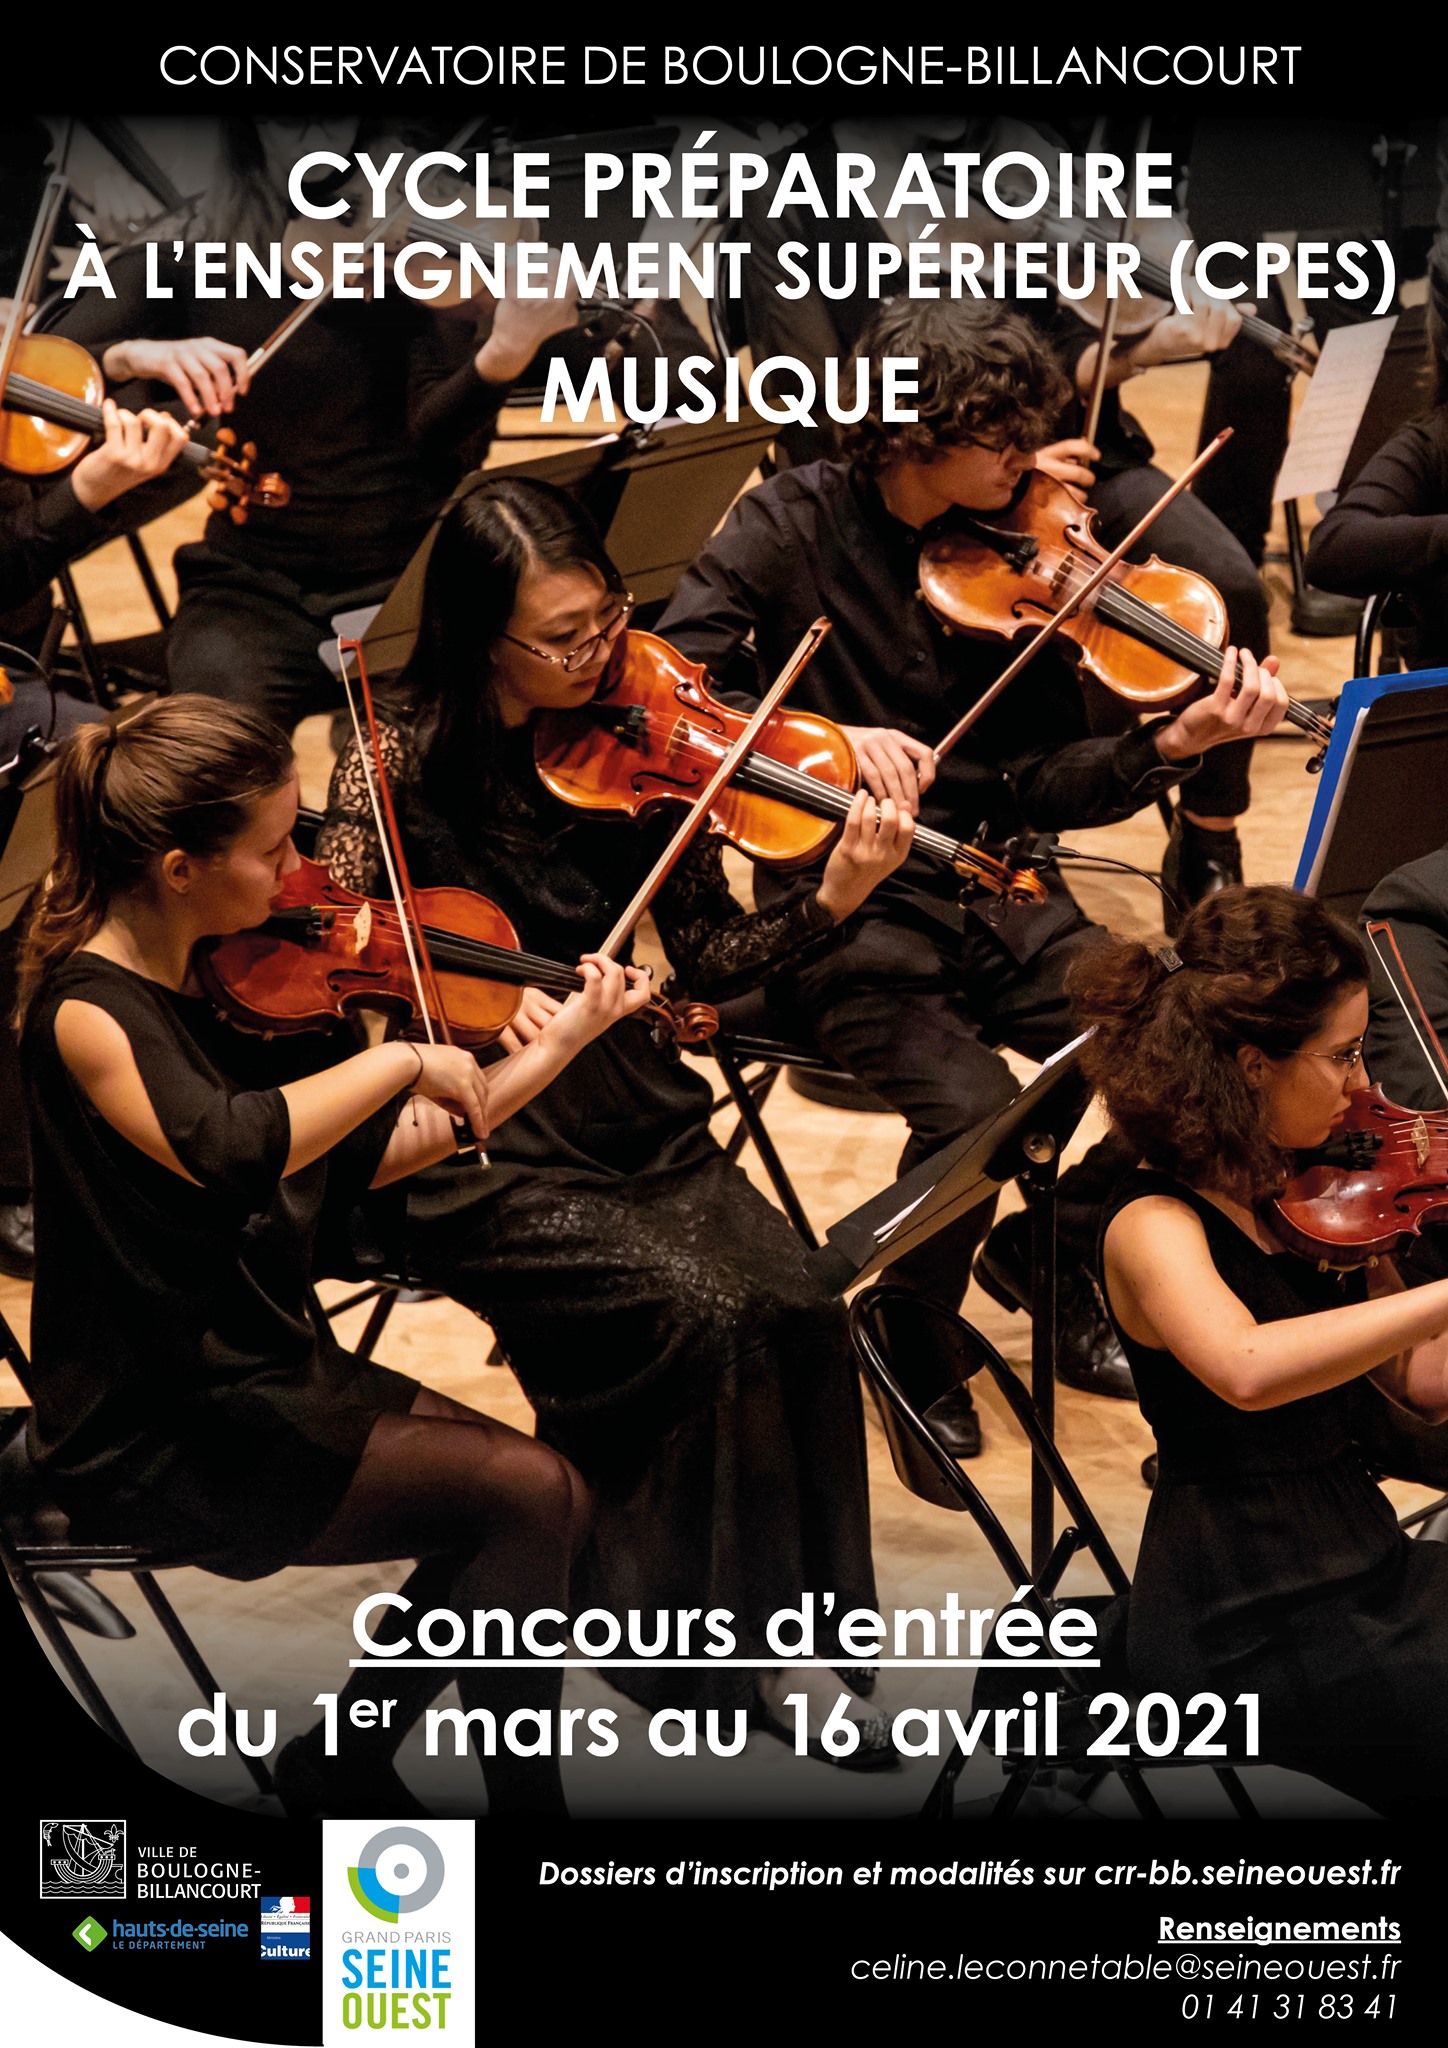 Affiche du conservatoire de Boulogne-Billancourt. Cycle préparatoire à l'enseignement supérieur (CPES) Musique. Concours d'entrée du 1er au 16 avril 2021